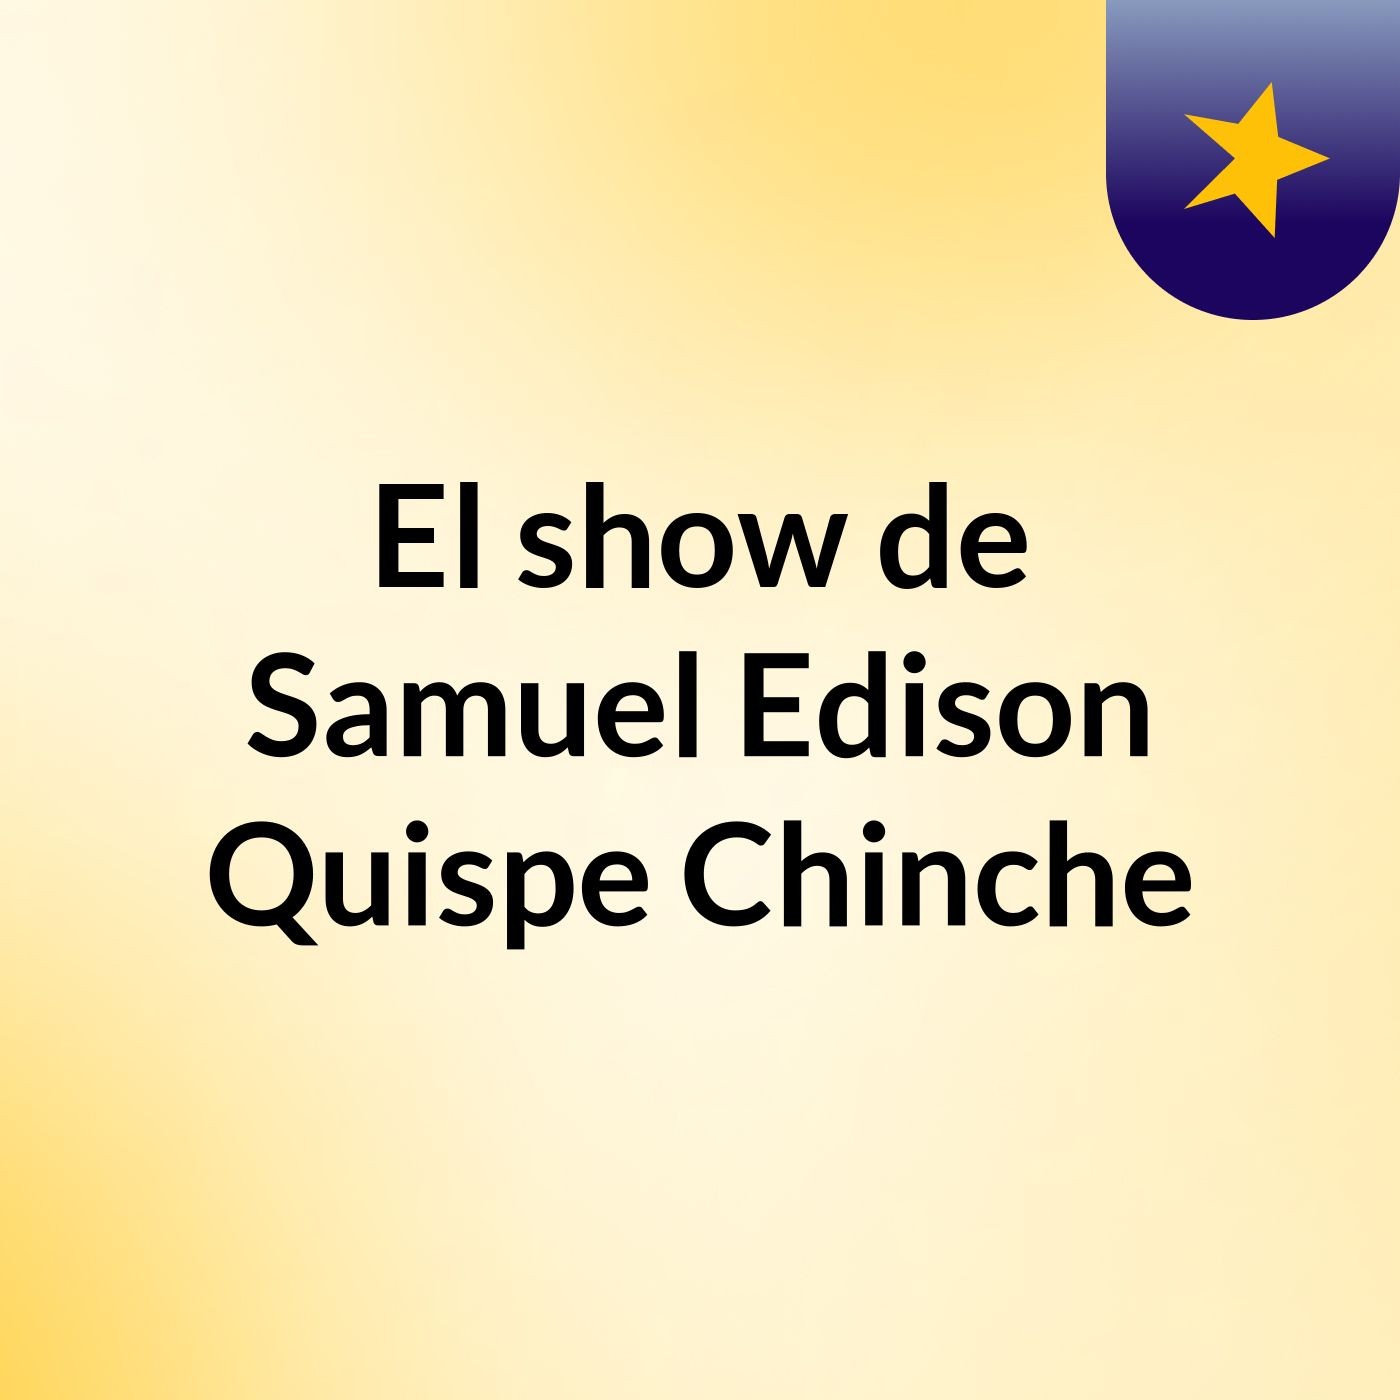 El show de Samuel Edison Quispe Chinche